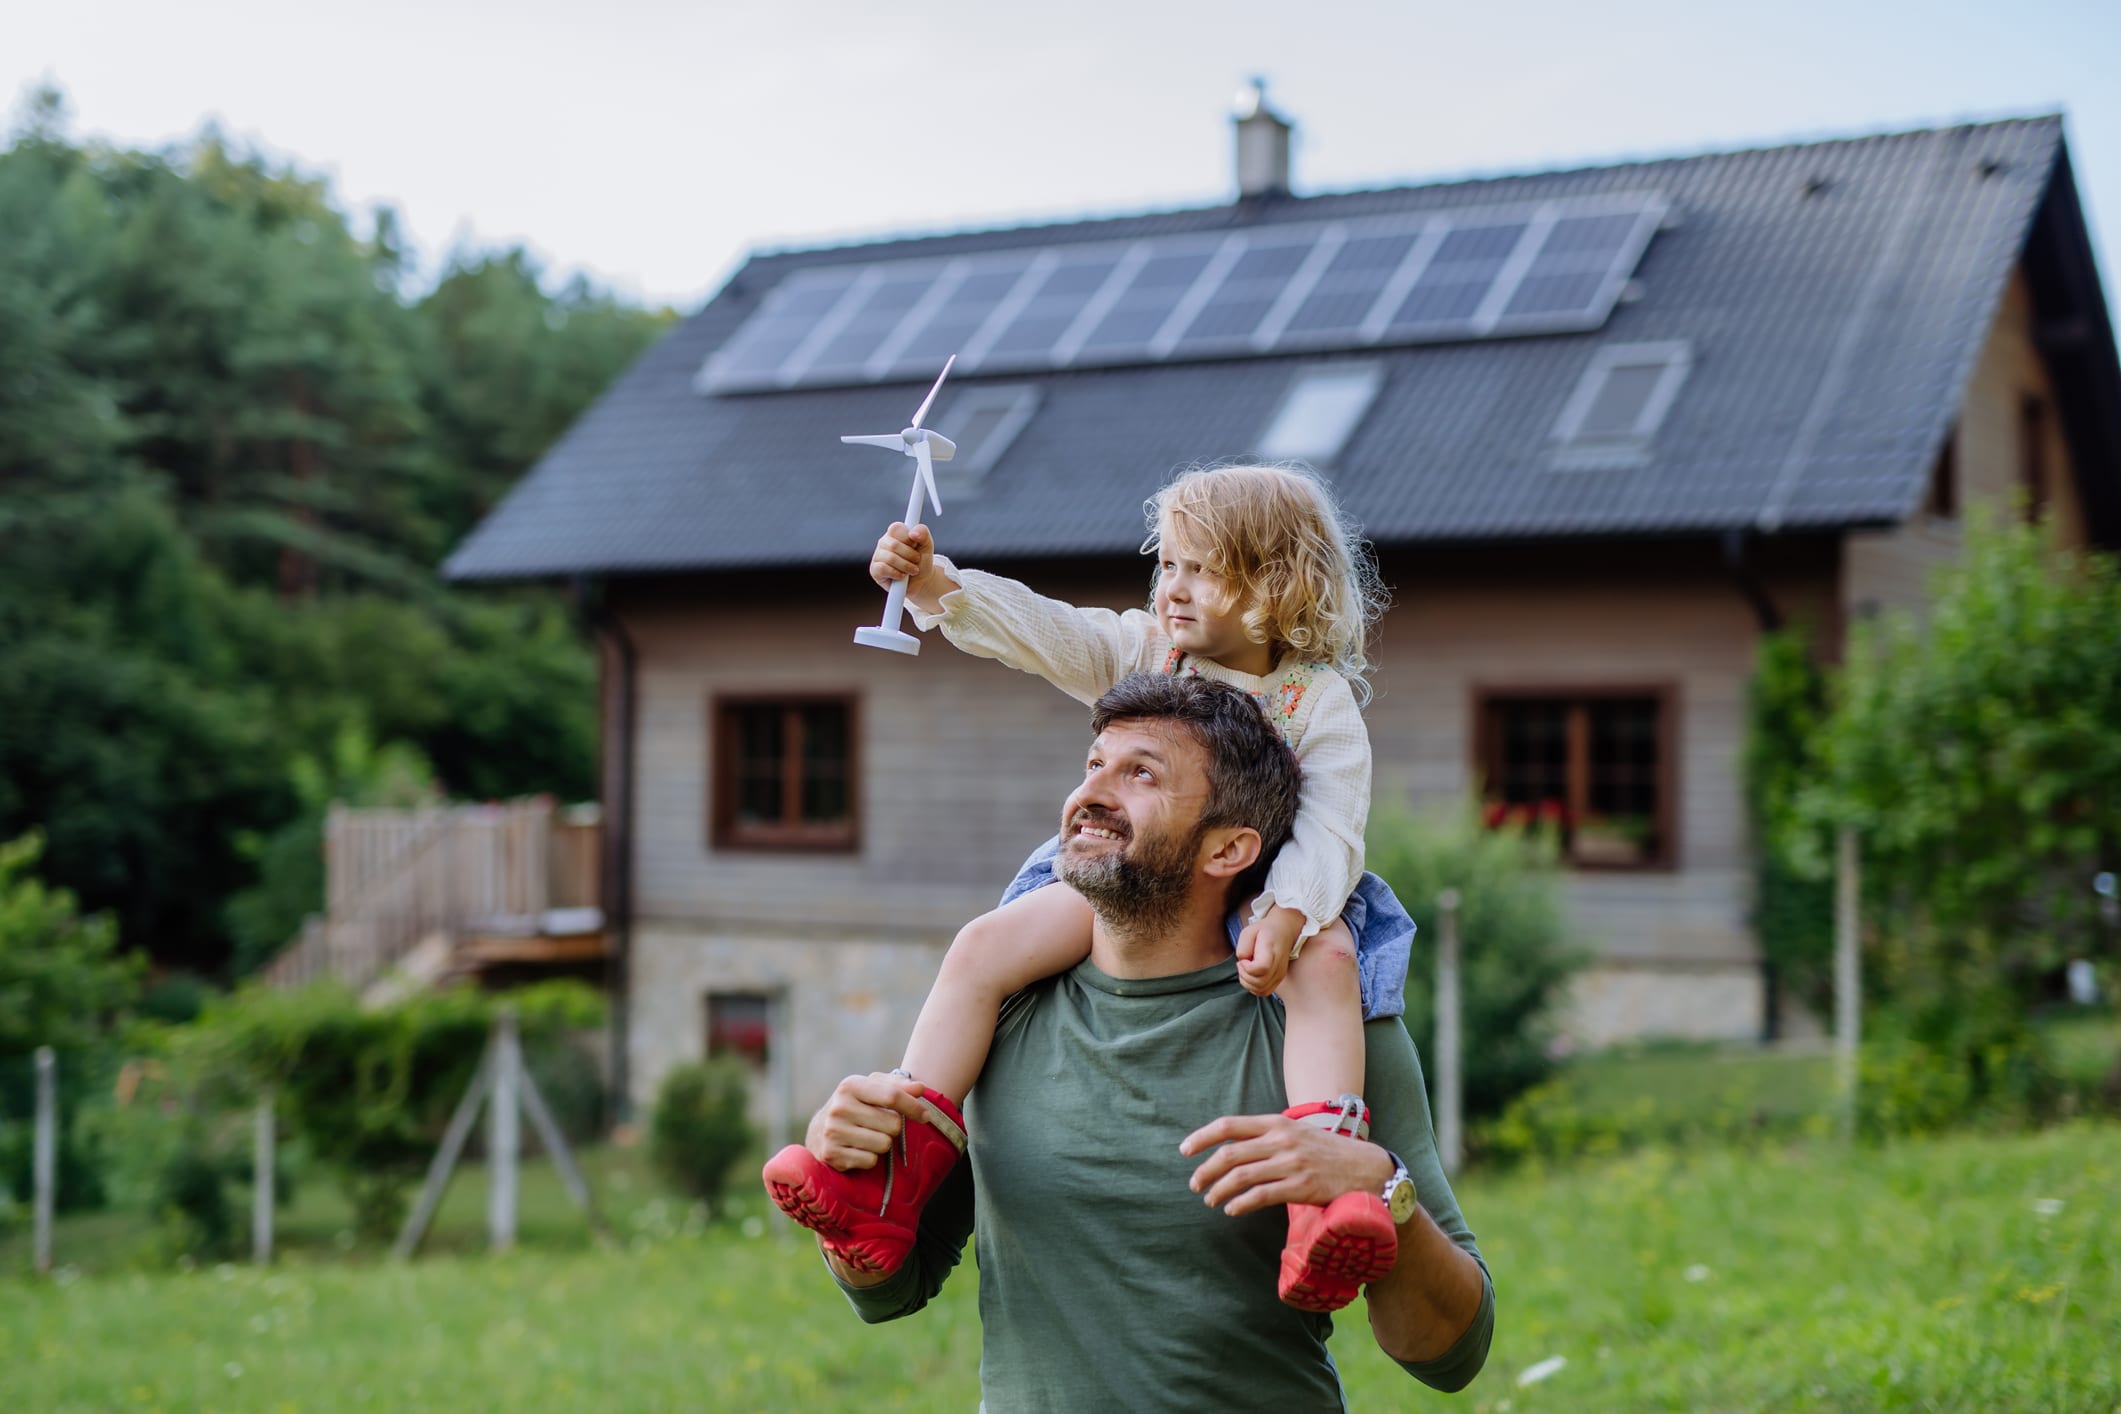 Vater und Tochter vor einem energieeffizientem Einfamilienhaus mit Solardach.